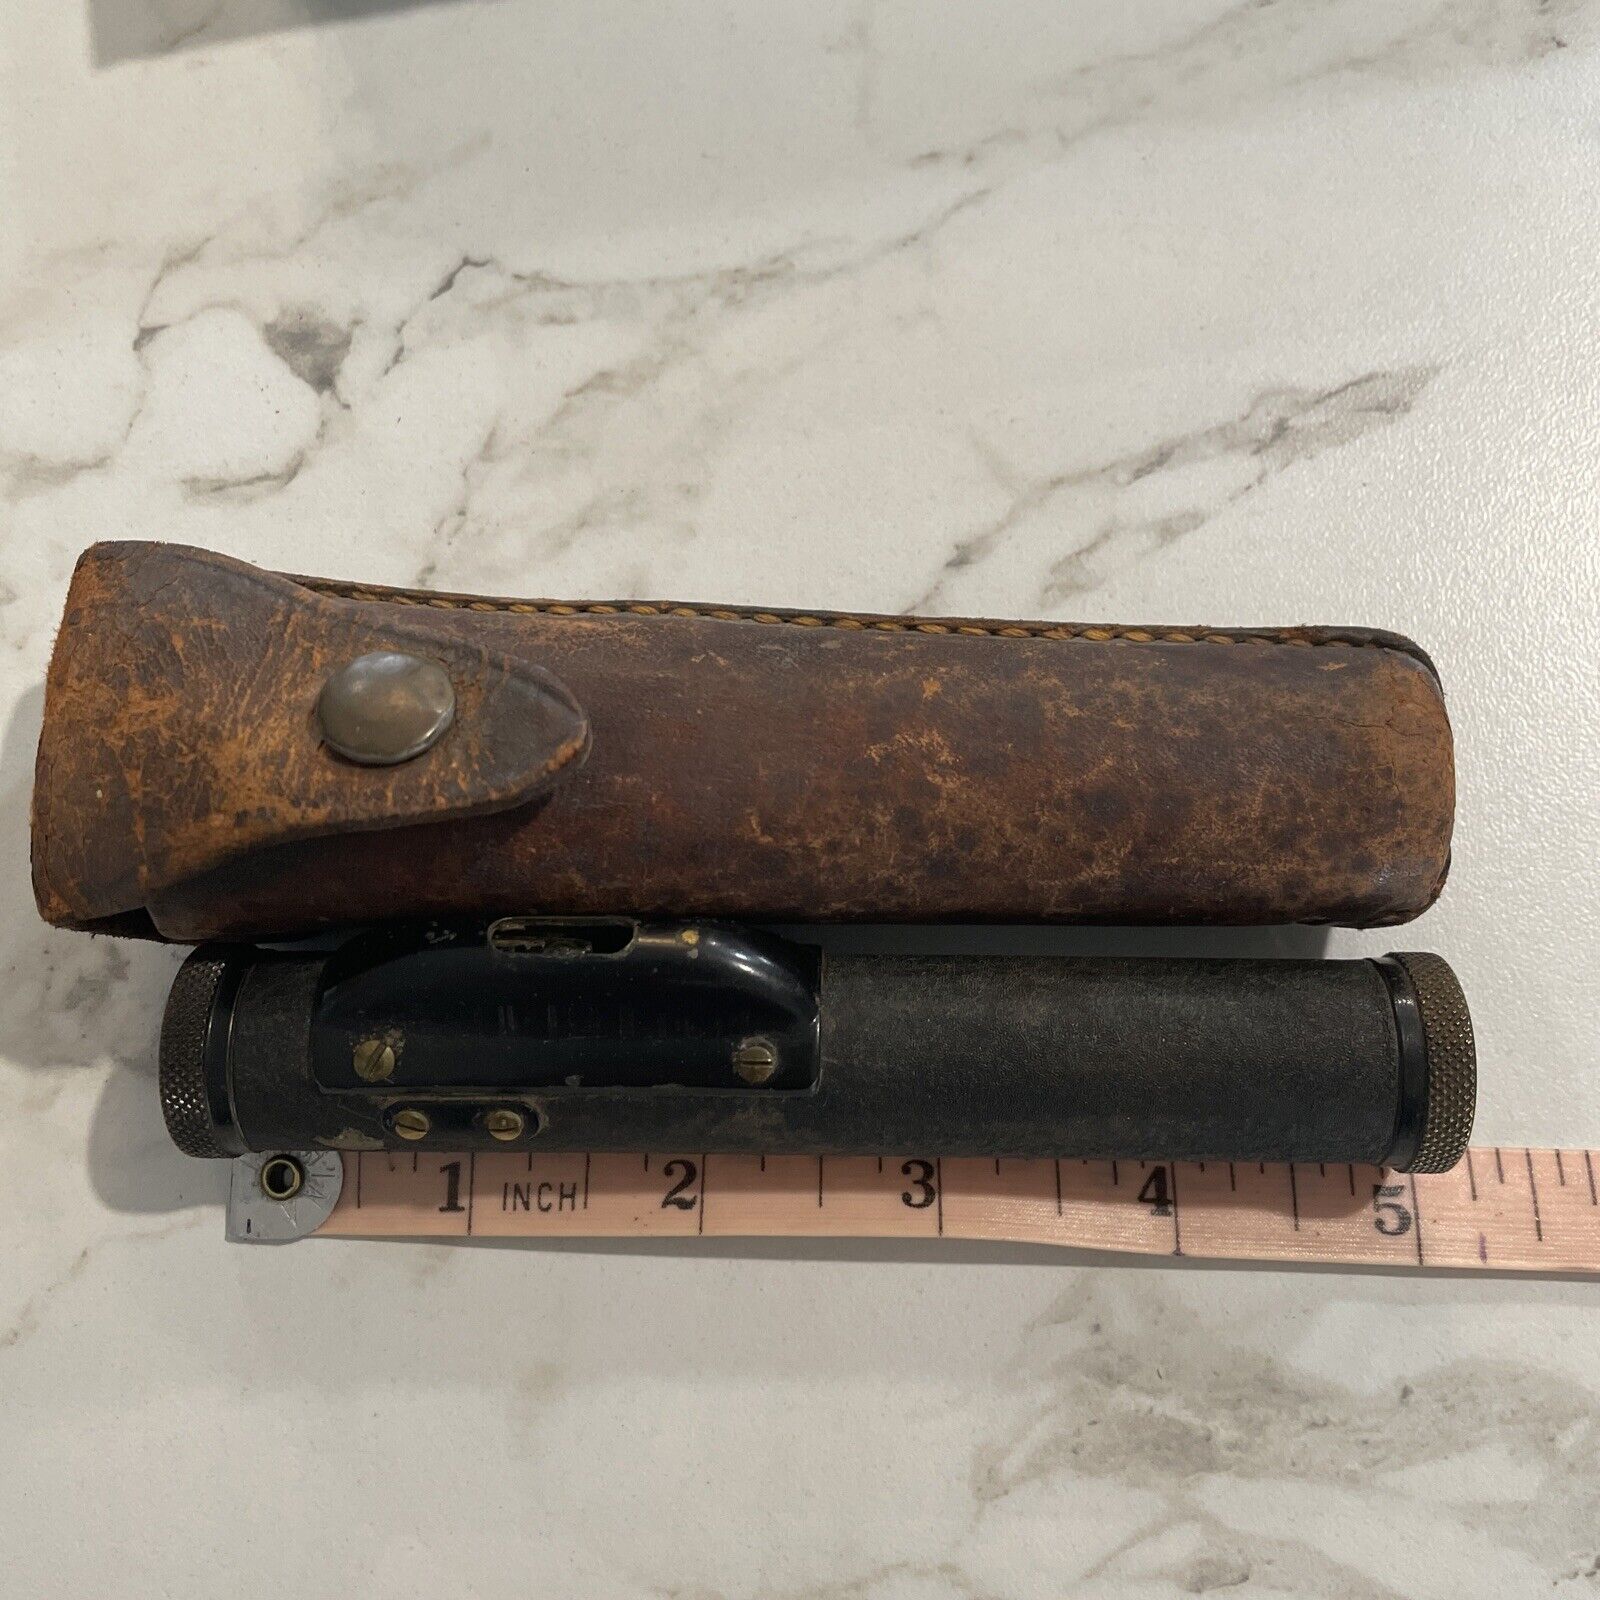 Antique Level Surveyors Scope Pocket Size With Case